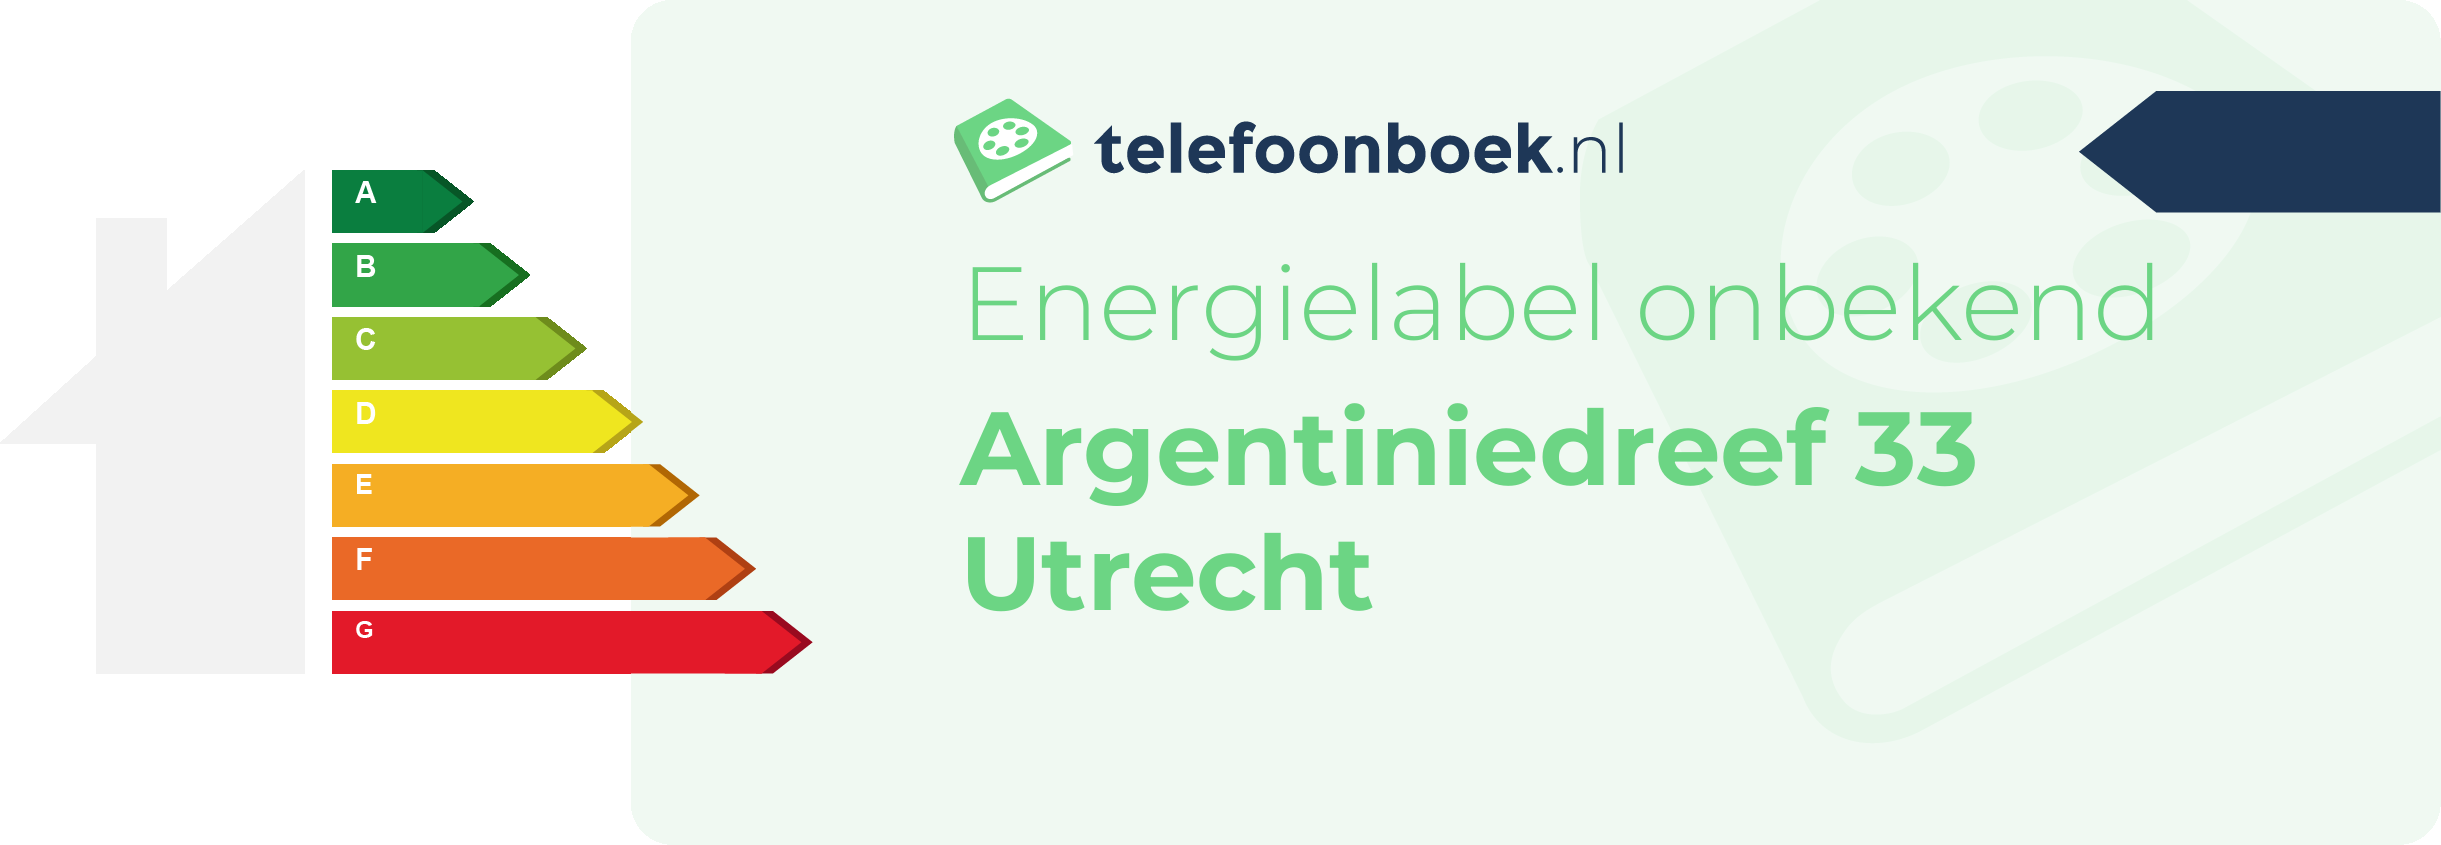 Energielabel Argentiniedreef 33 Utrecht